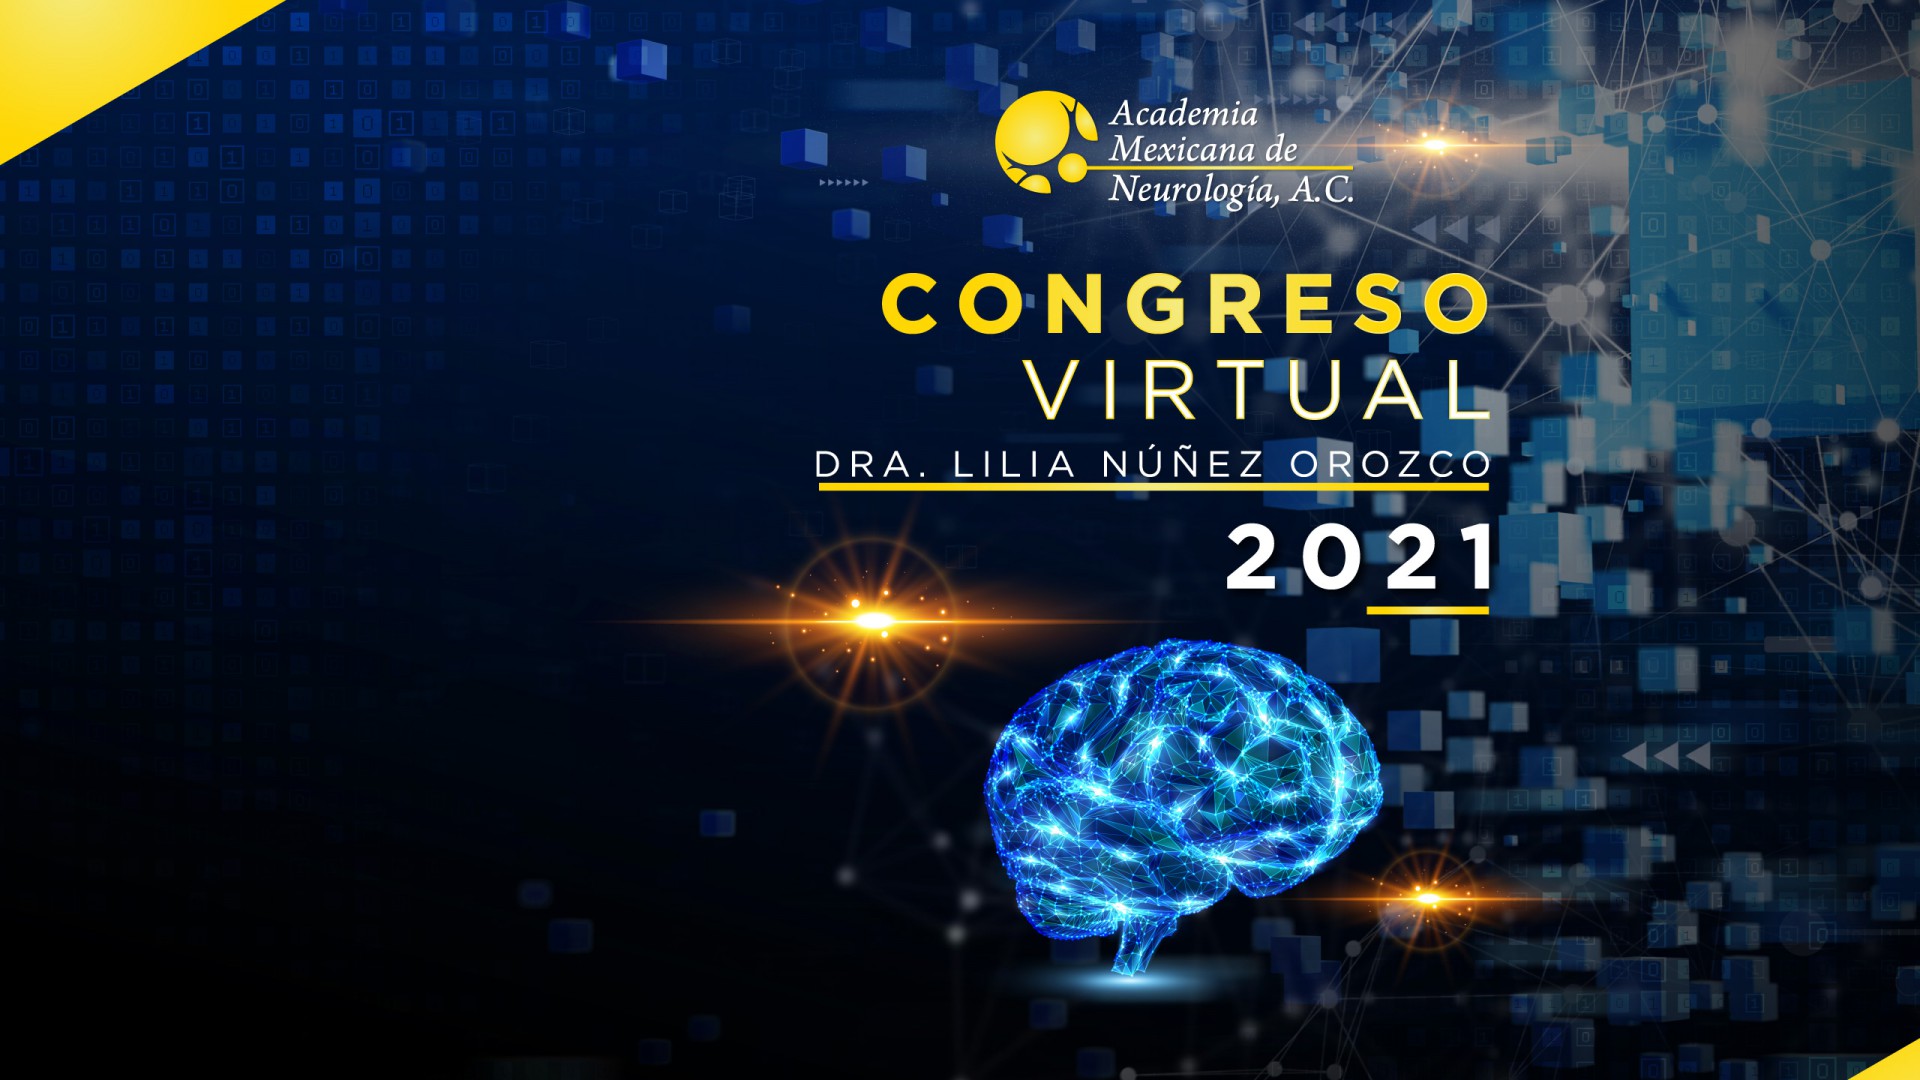 Congreso Virtual de Neurología 2021 "Dra. Lilia Núñez Orozco"